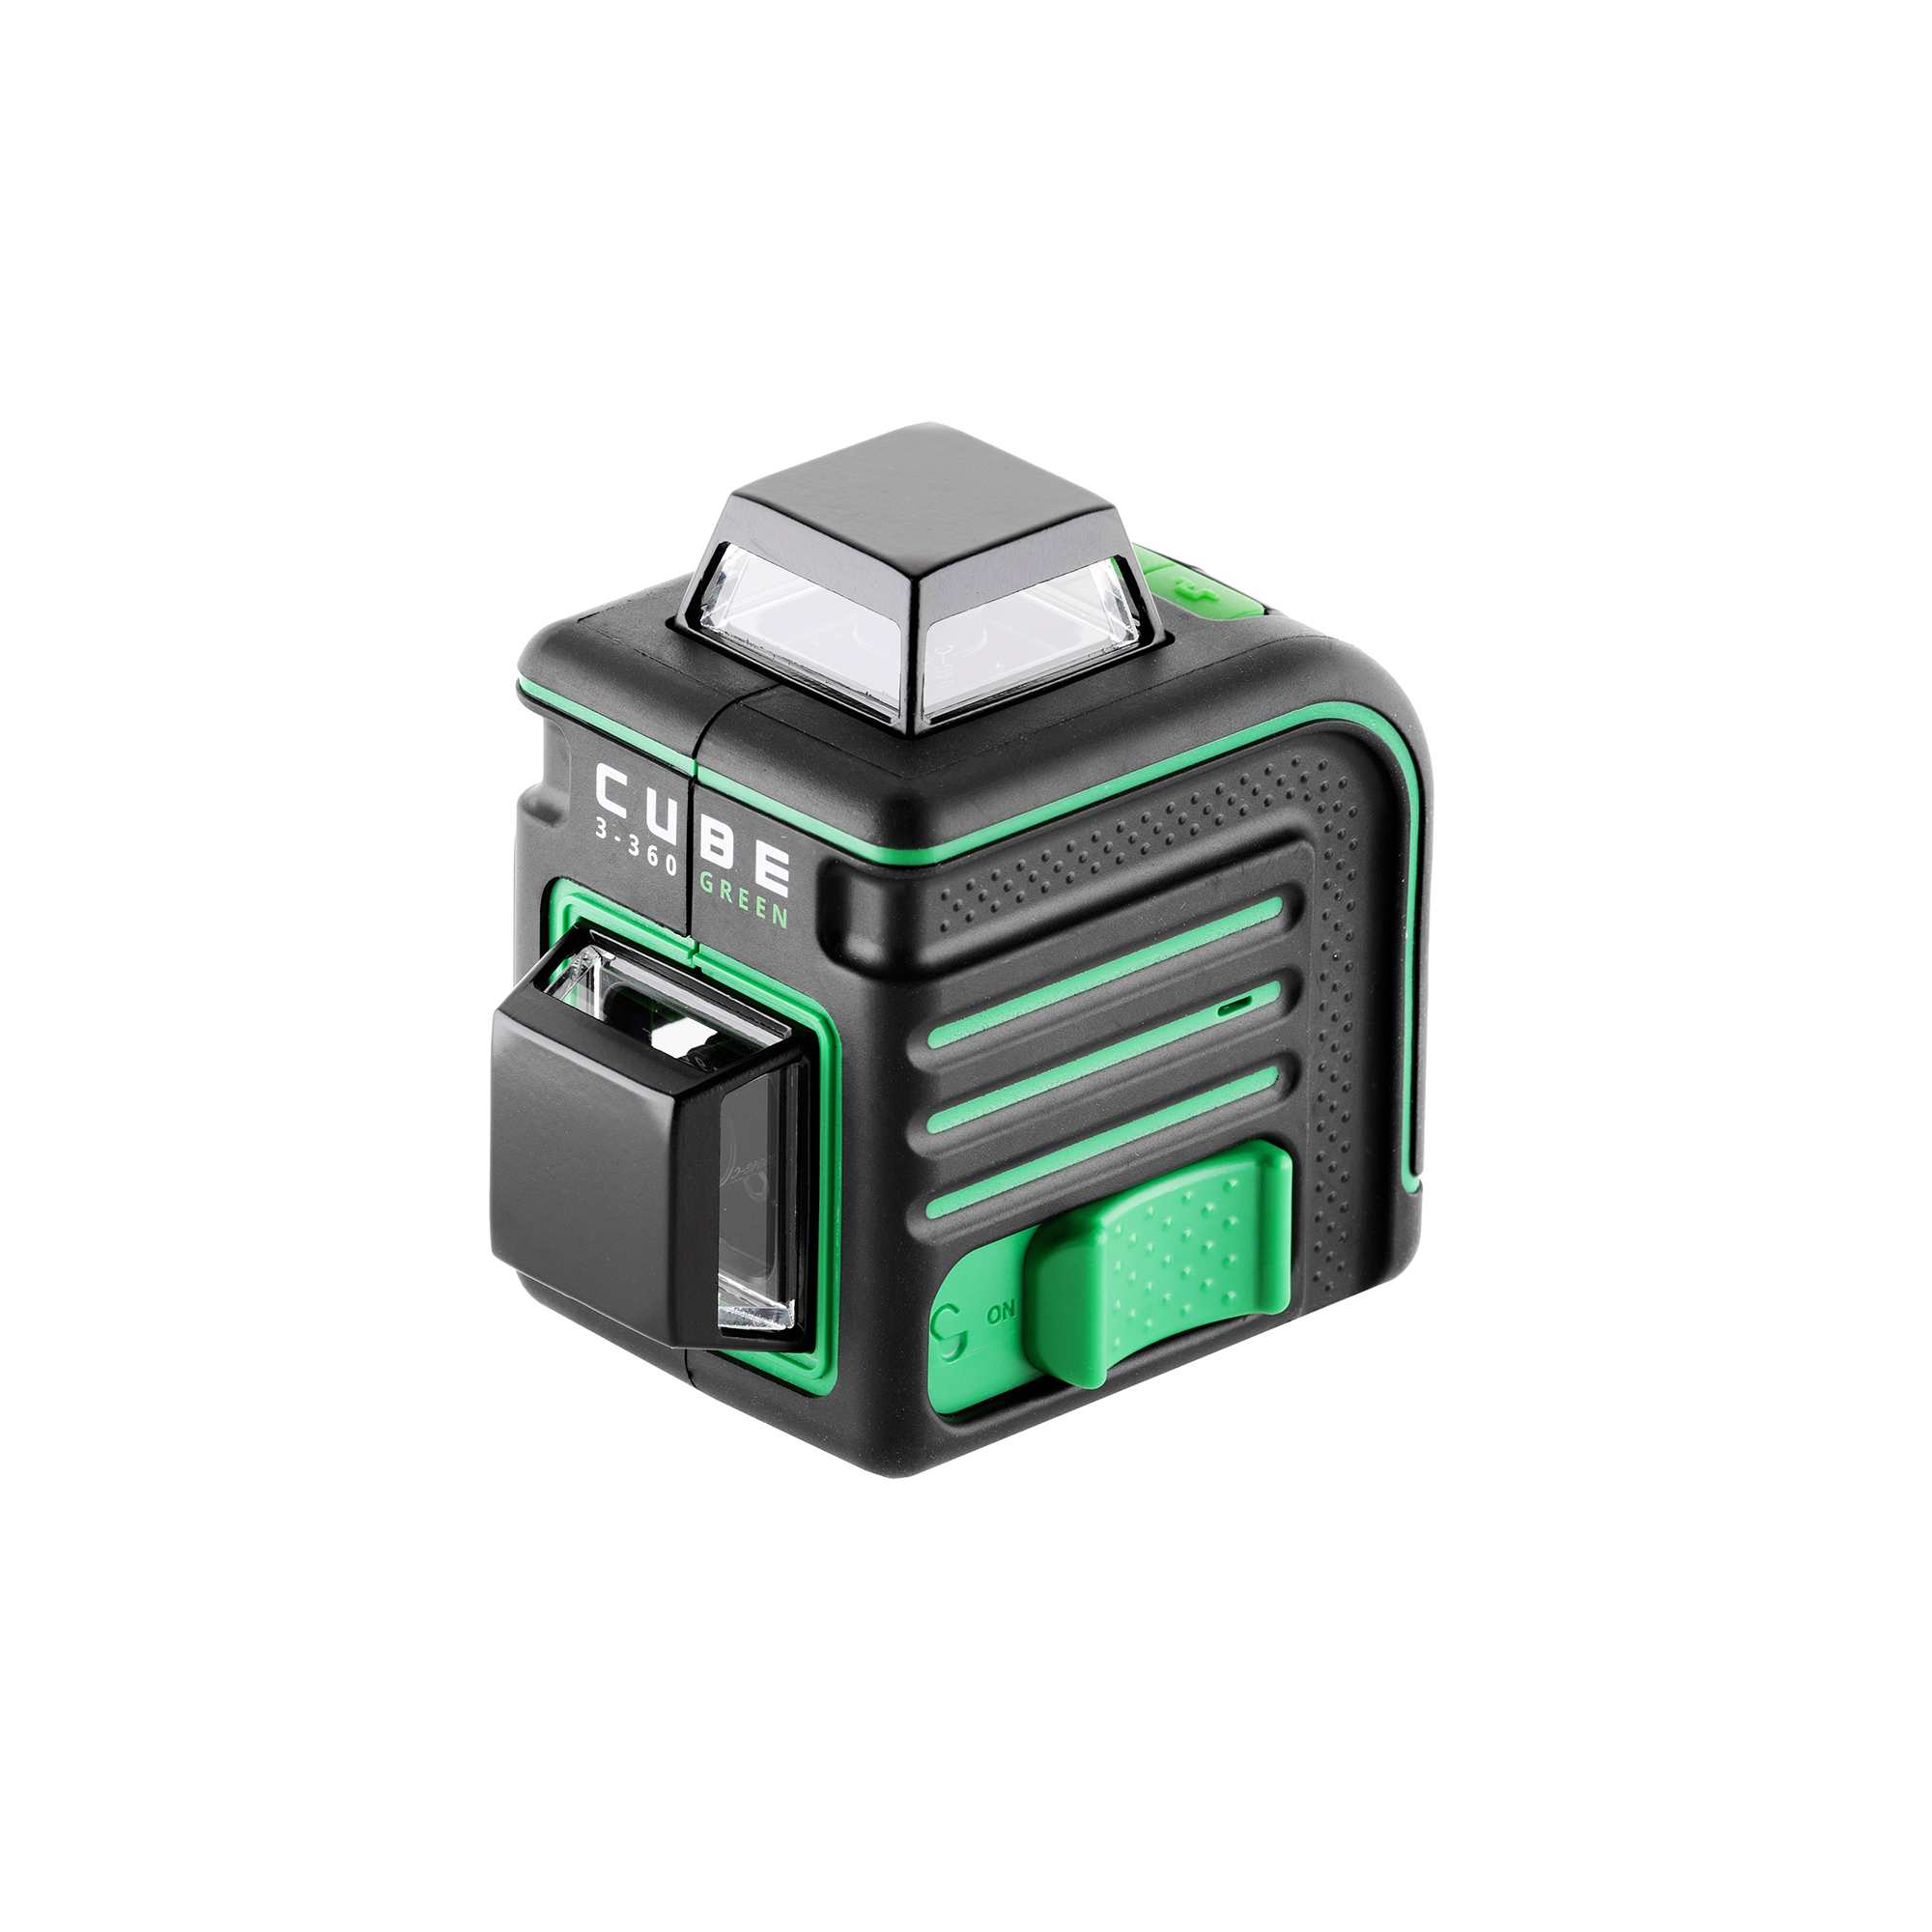 Лазерный уровень cube 360 professional edition. Лазерный уровень ada Cube 3-360 Green. Лазерный уровень ada Cube 3-360 Green Basic Edition а00560. Лазерный уровень ada Cube 3-360 Green Home Edition а00566. Ada Cube 3-360 Green Ultimate Edition.